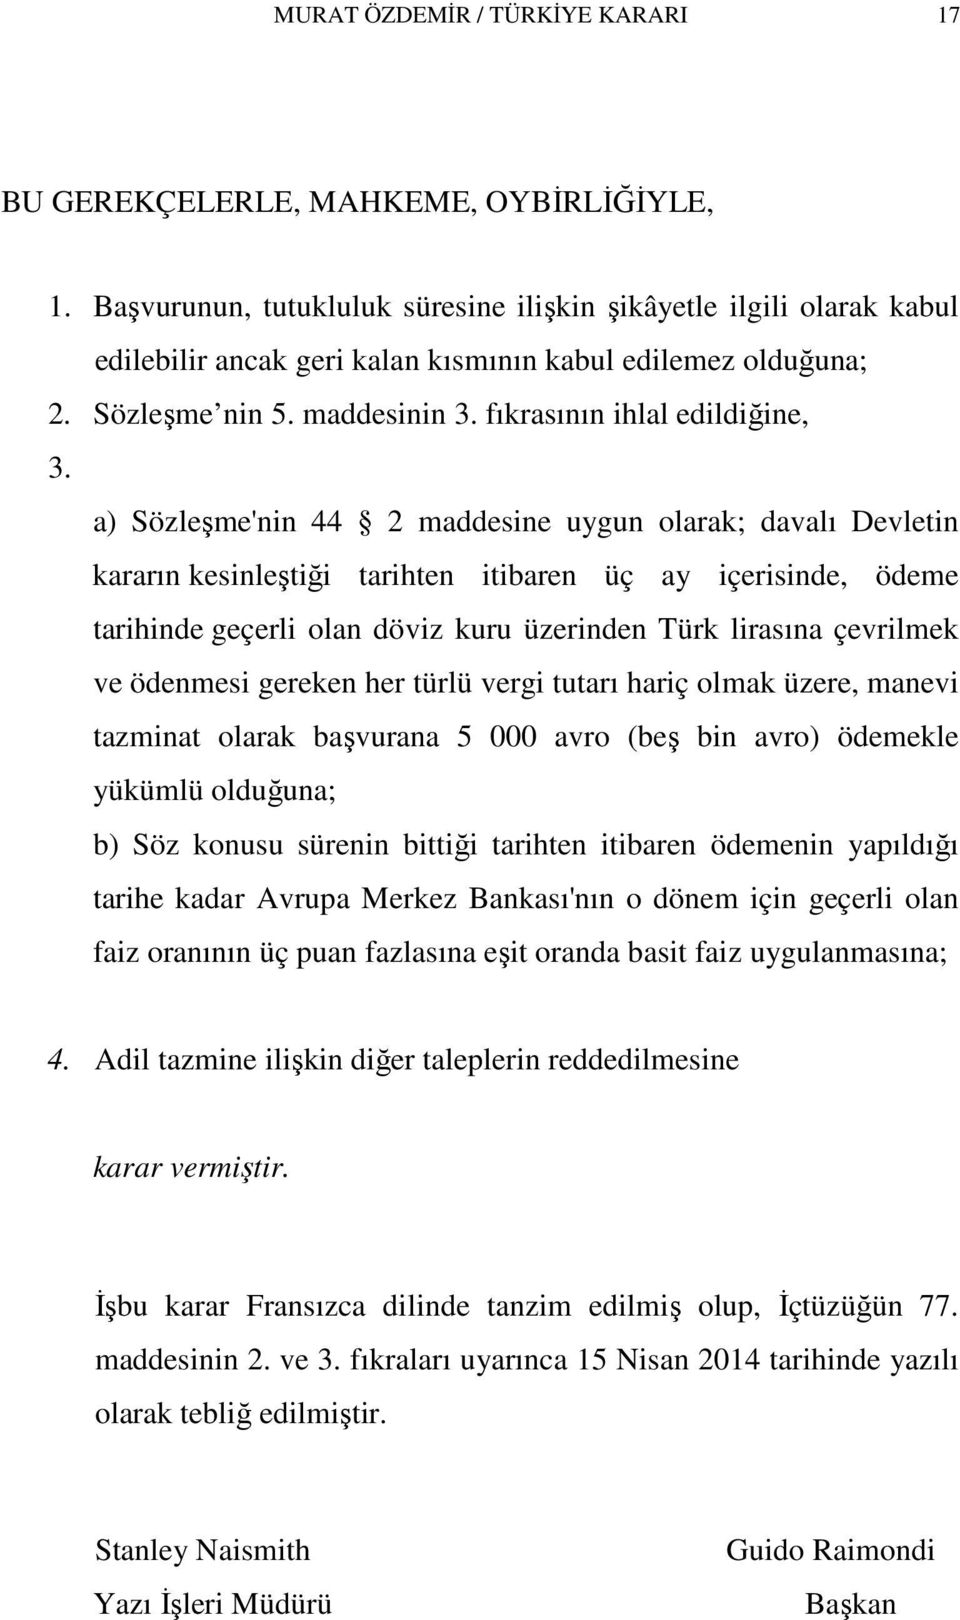 a) Sözleşme'nin 44 2 maddesine uygun olarak; davalı Devletin kararın kesinleştiği tarihten itibaren üç ay içerisinde, ödeme tarihinde geçerli olan döviz kuru üzerinden Türk lirasına çevrilmek ve